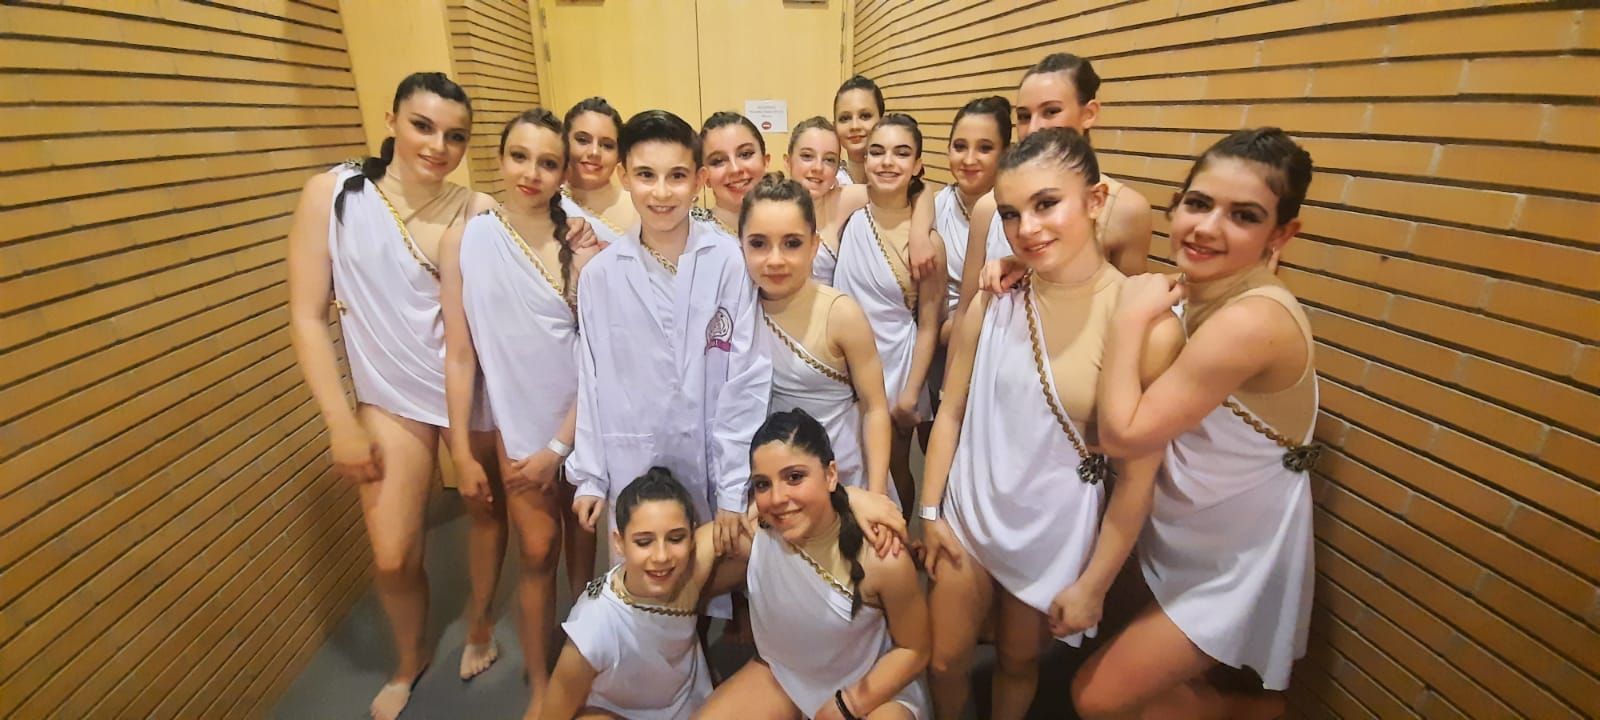 Éxito de la academia "Candelarte" de Lugones en el campeonato de baile celebrado en Burgos